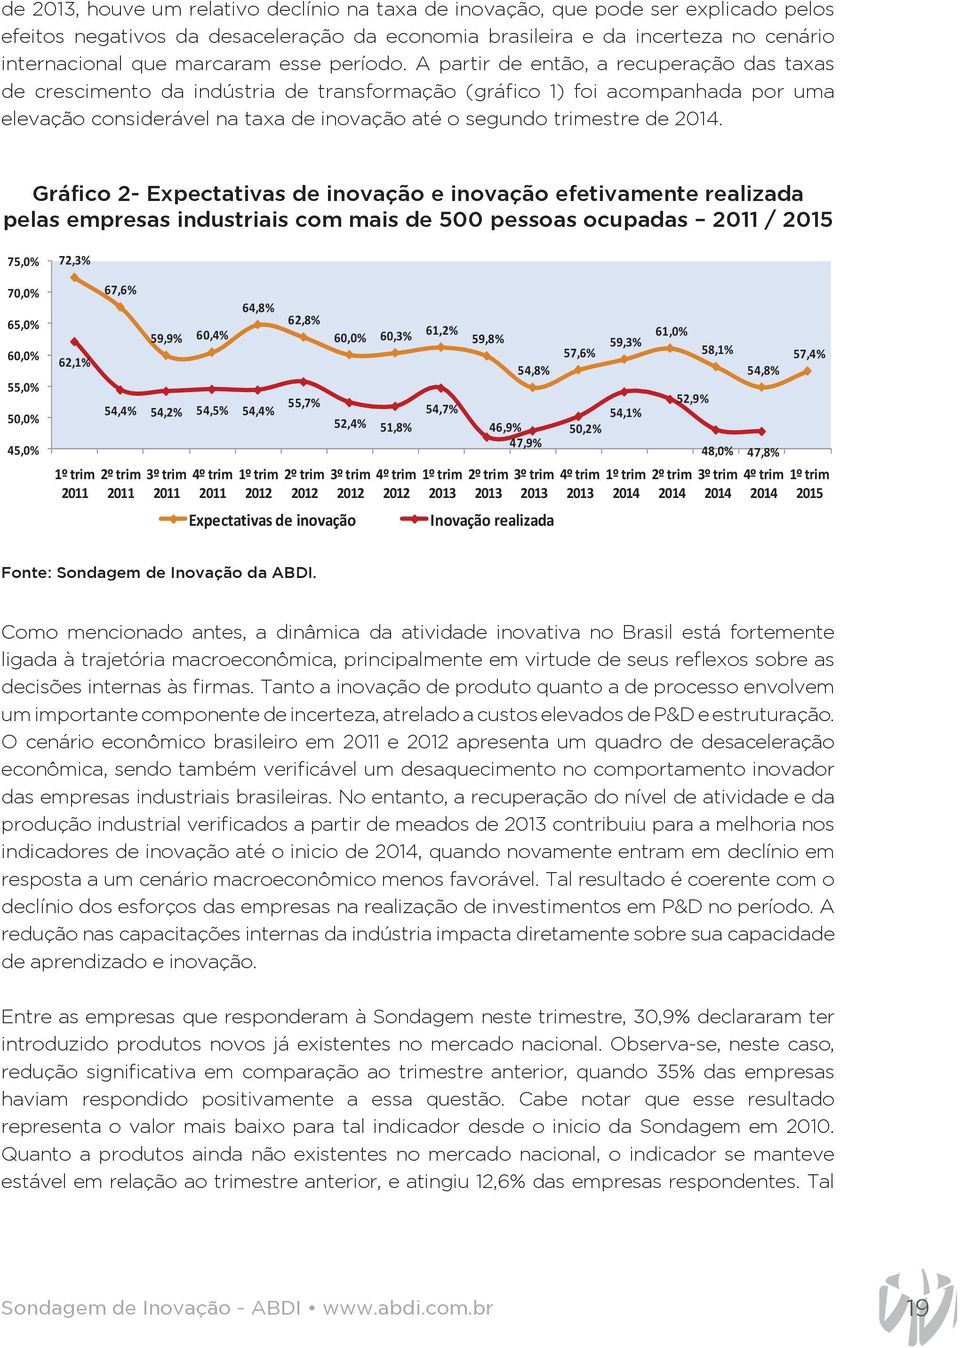 Com efeito, entre meados de e meados de, houve um relativo declínio na taxa de inovação, que pode ser explicado pelos efeitos negativos da desaceleração de, houve da economia um relativo brasileira